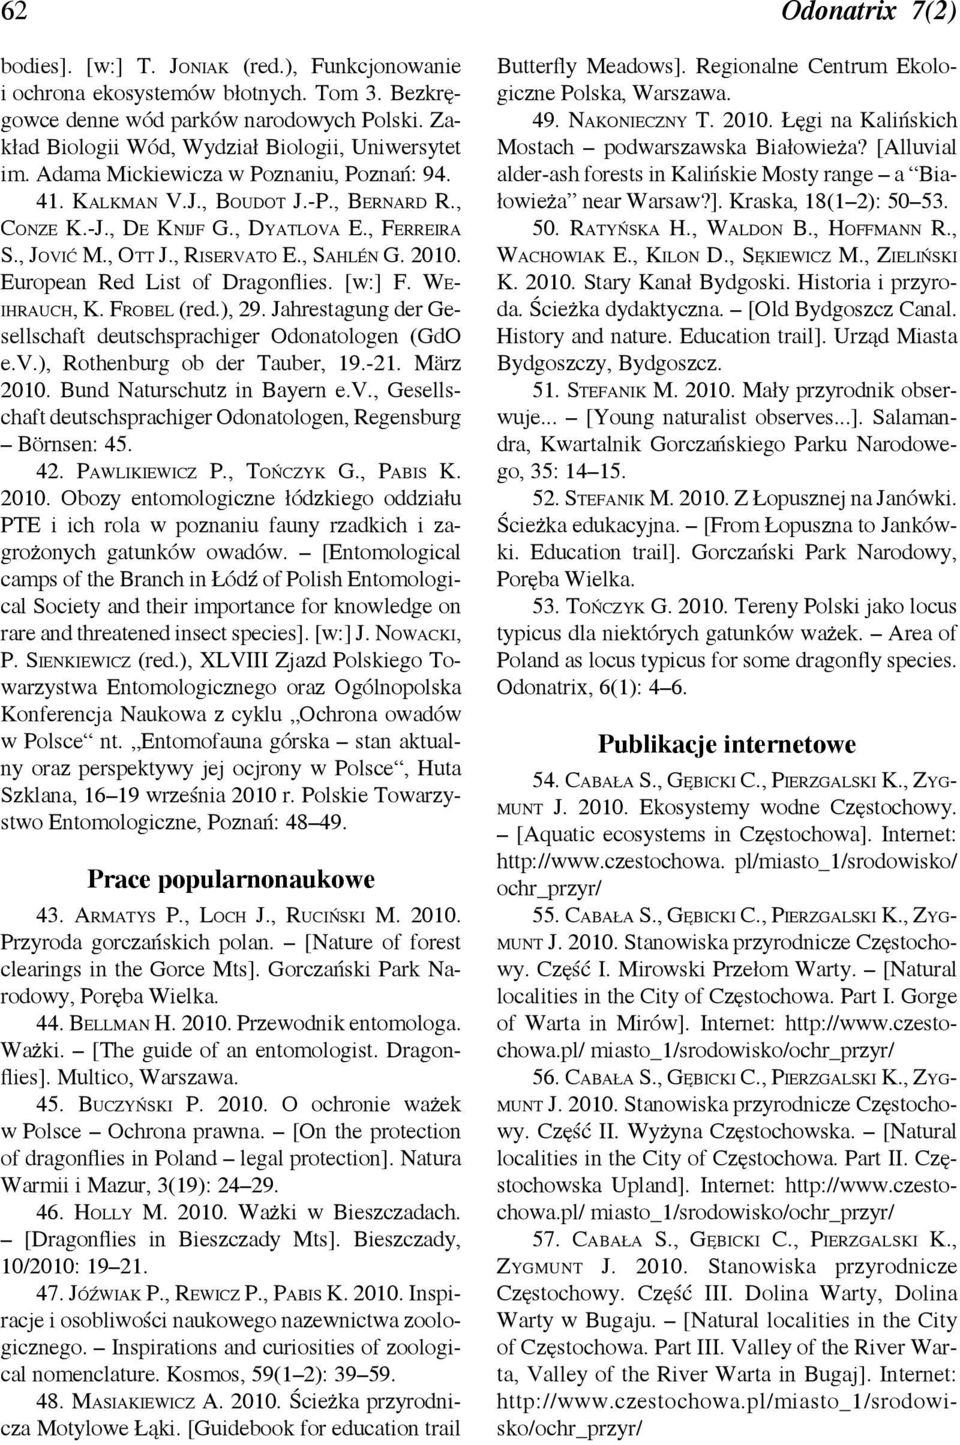 , Jović M., Ott J., Riservato E., Sahlén G. 2010. European Red List of Dragonflies. [w:] F. Weihrauch, K. Frobel (red.), 29. Jahrestagung der Gesellschaft deutschsprachiger Odonatologen (GdO e.v.), Rothenburg ob der Tauber, 19.